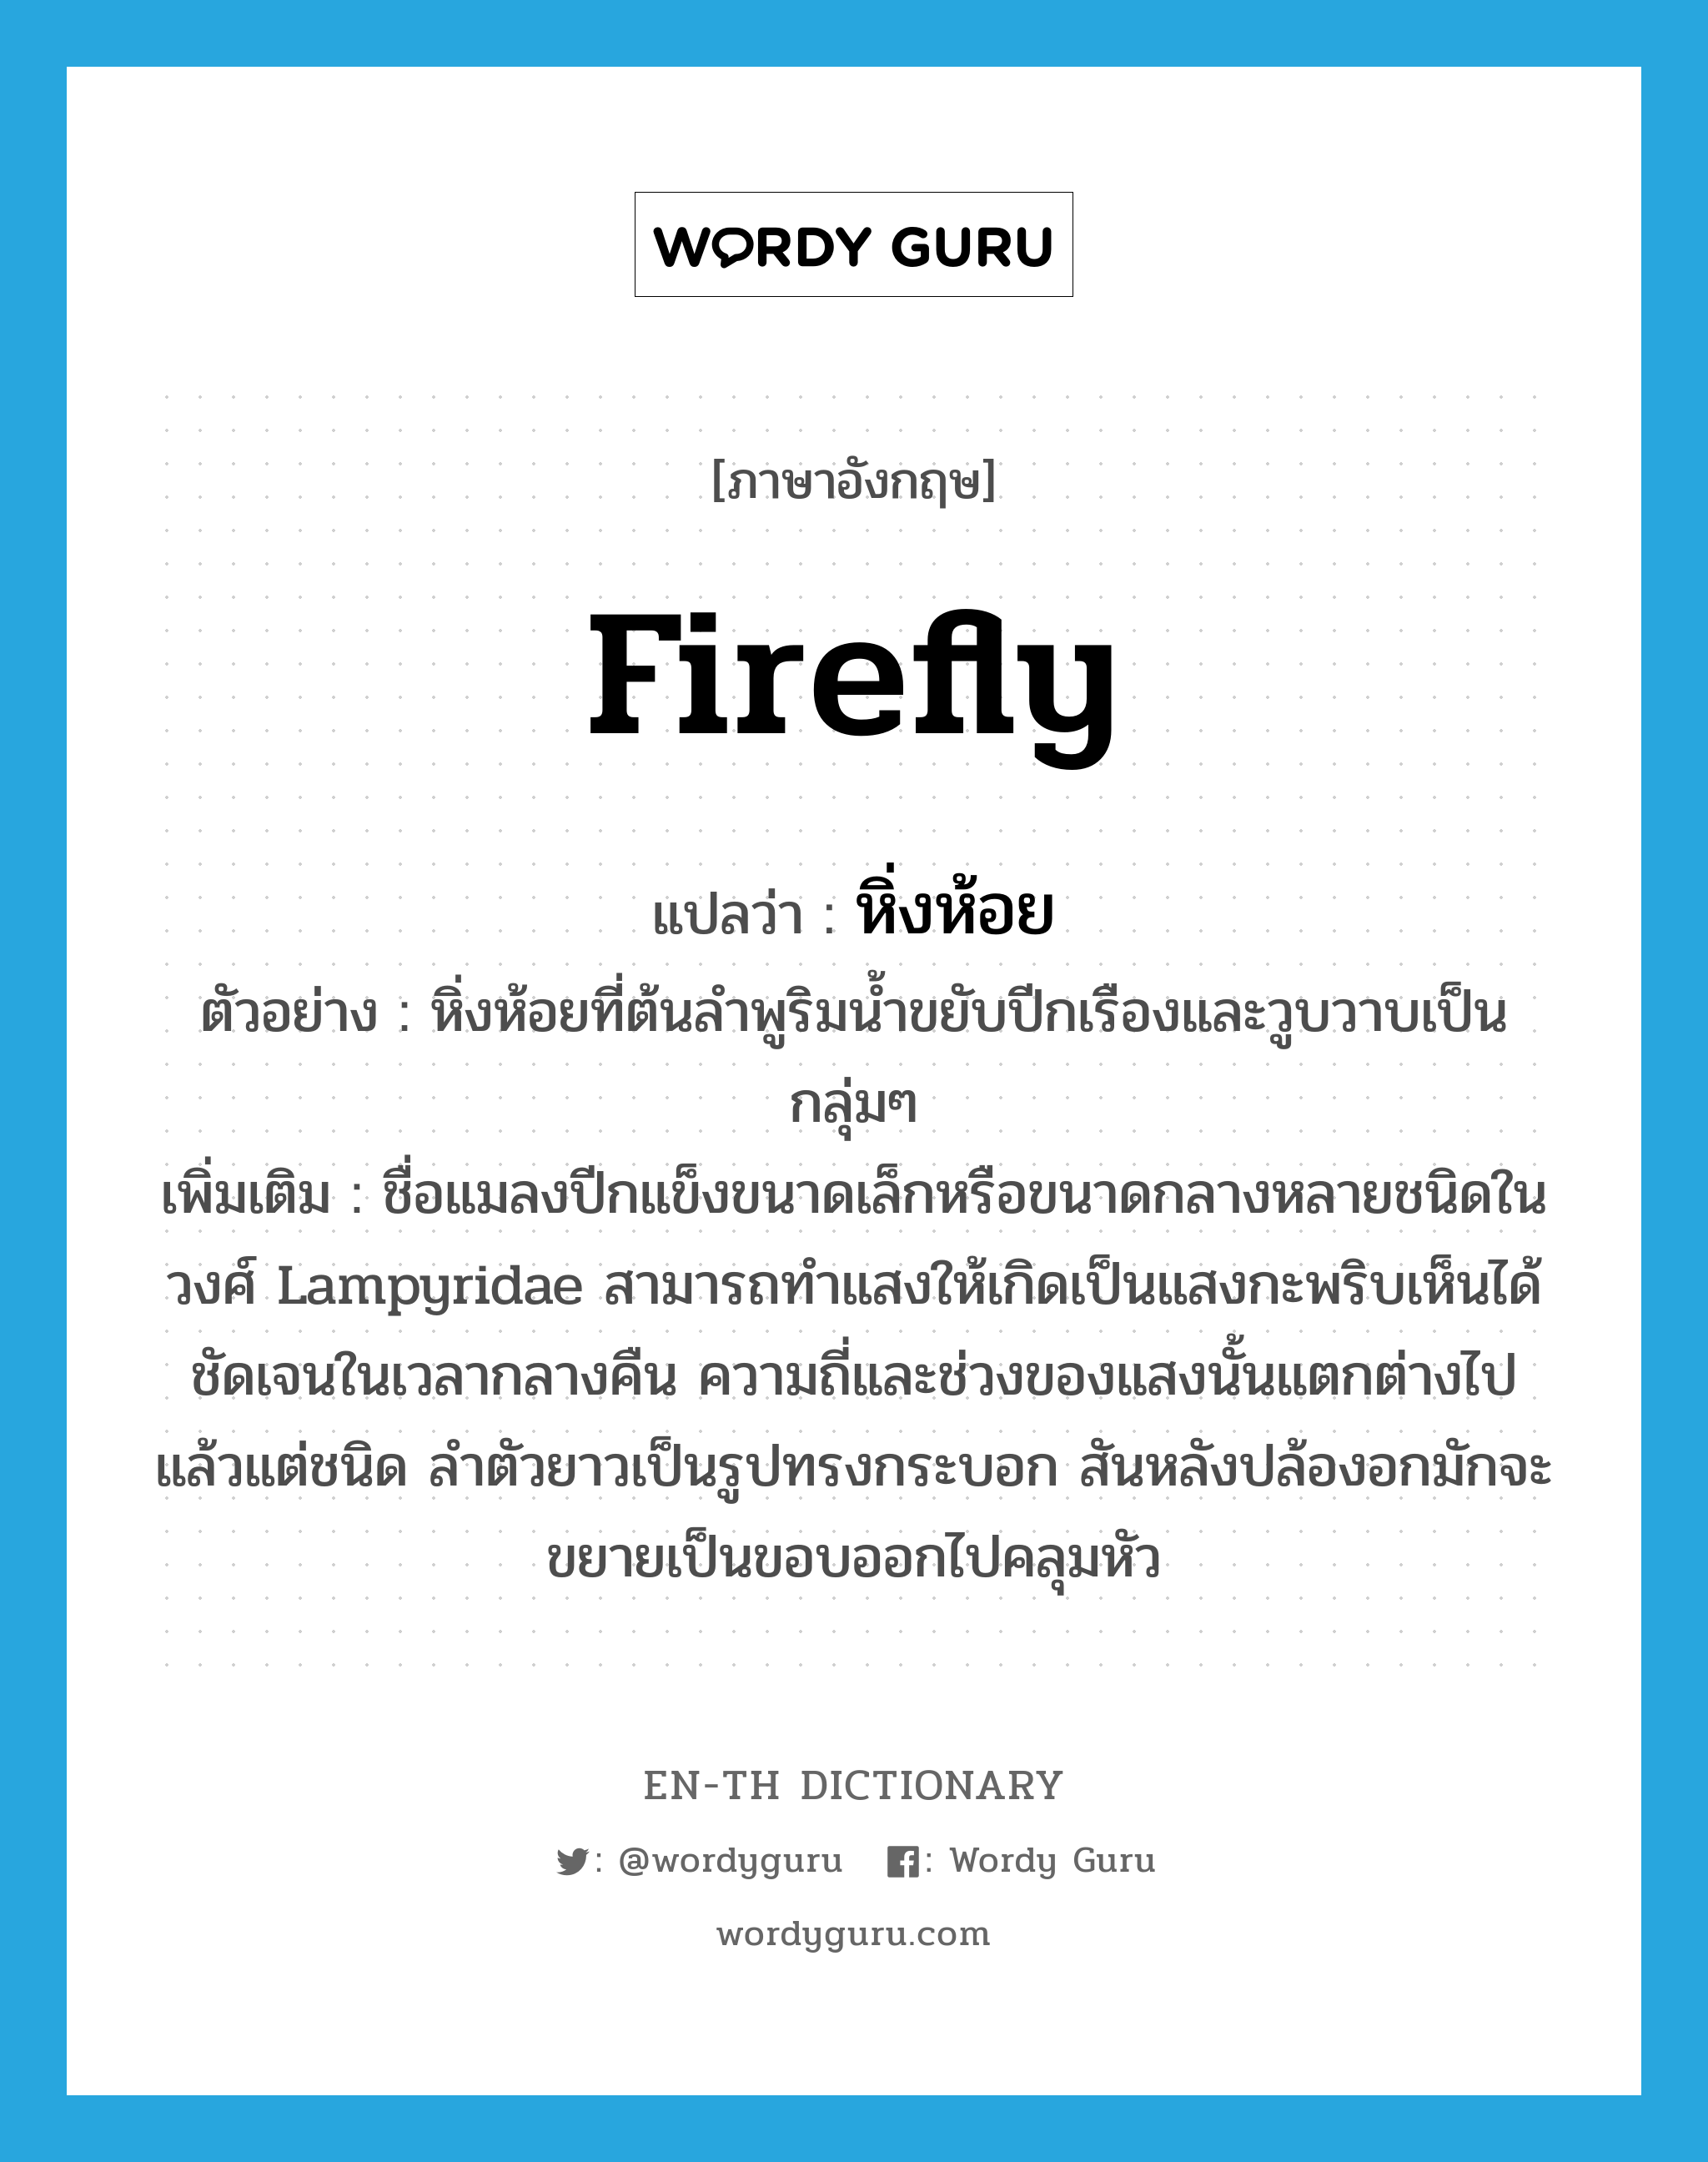 firefly แปลว่า?, คำศัพท์ภาษาอังกฤษ firefly แปลว่า หิ่งห้อย ประเภท N ตัวอย่าง หิ่งห้อยที่ต้นลำพูริมน้ำขยับปีกเรืองและวูบวาบเป็นกลุ่มๆ เพิ่มเติม ชื่อแมลงปีกแข็งขนาดเล็กหรือขนาดกลางหลายชนิดในวงศ์ Lampyridae สามารถทำแสงให้เกิดเป็นแสงกะพริบเห็นได้ชัดเจนในเวลากลางคืน ความถี่และช่วงของแสงนั้นแตกต่างไปแล้วแต่ชนิด ลำตัวยาวเป็นรูปทรงกระบอก สันหลังปล้องอกมักจะขยายเป็นขอบออกไปคลุมหัว หมวด N